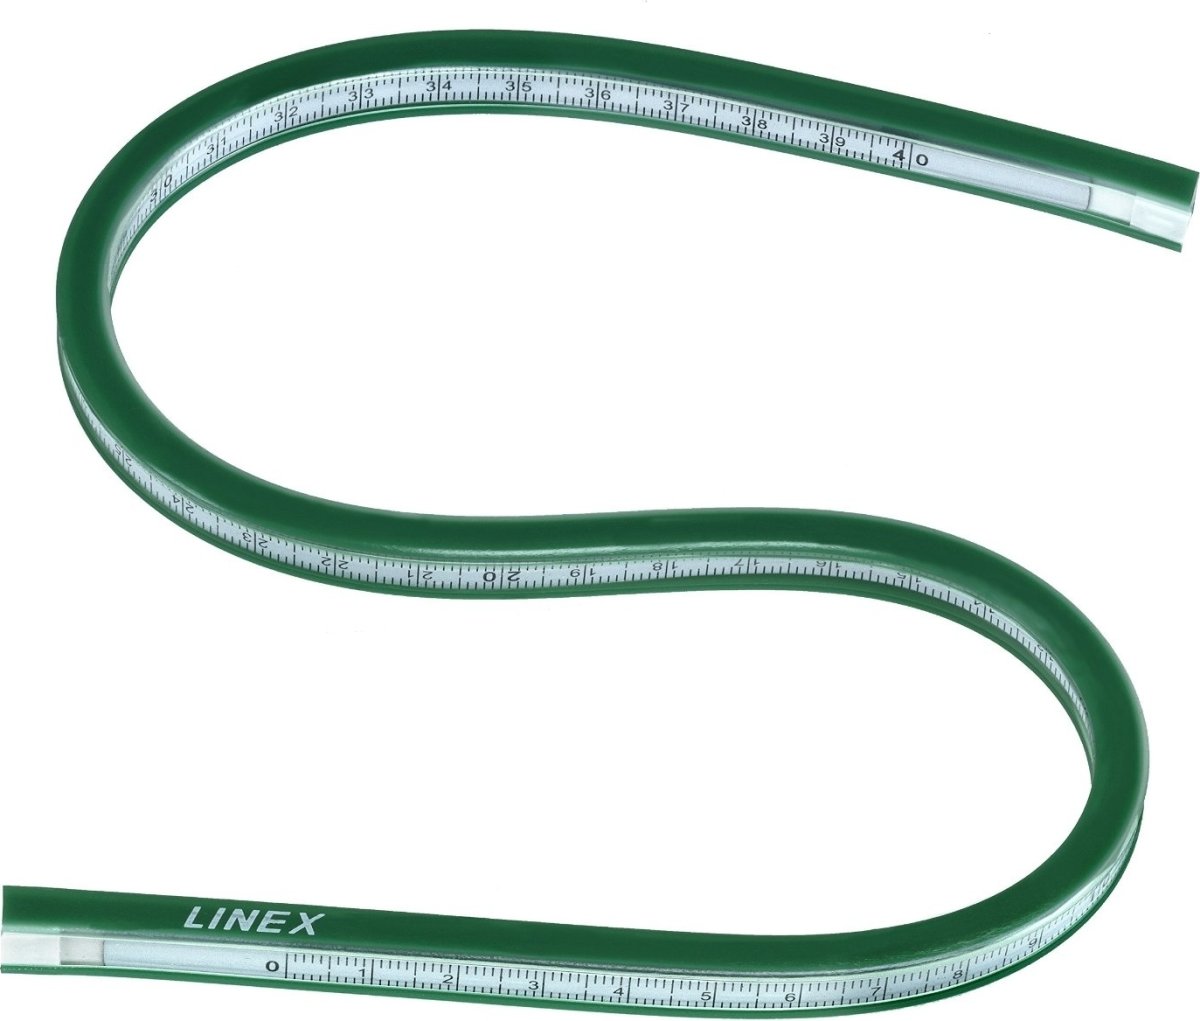 Linex FCG30 flexkurve lineal, 30 mm